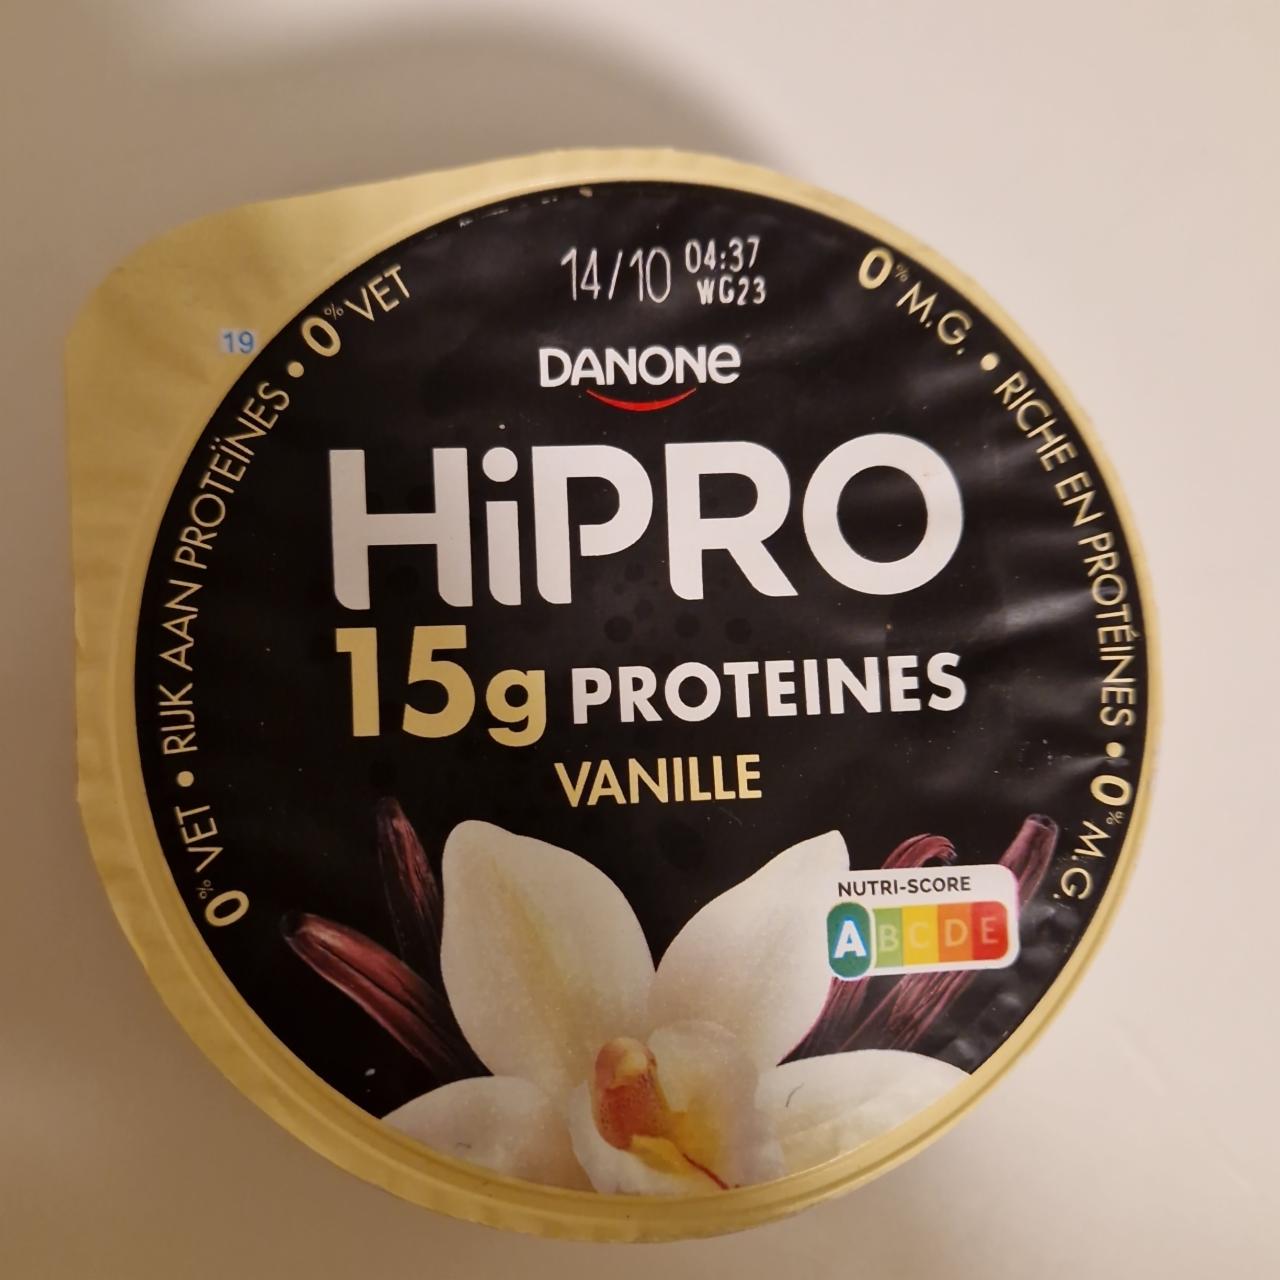 Zdjęcia - HiPro 15g proteines vanilla flavour Danone